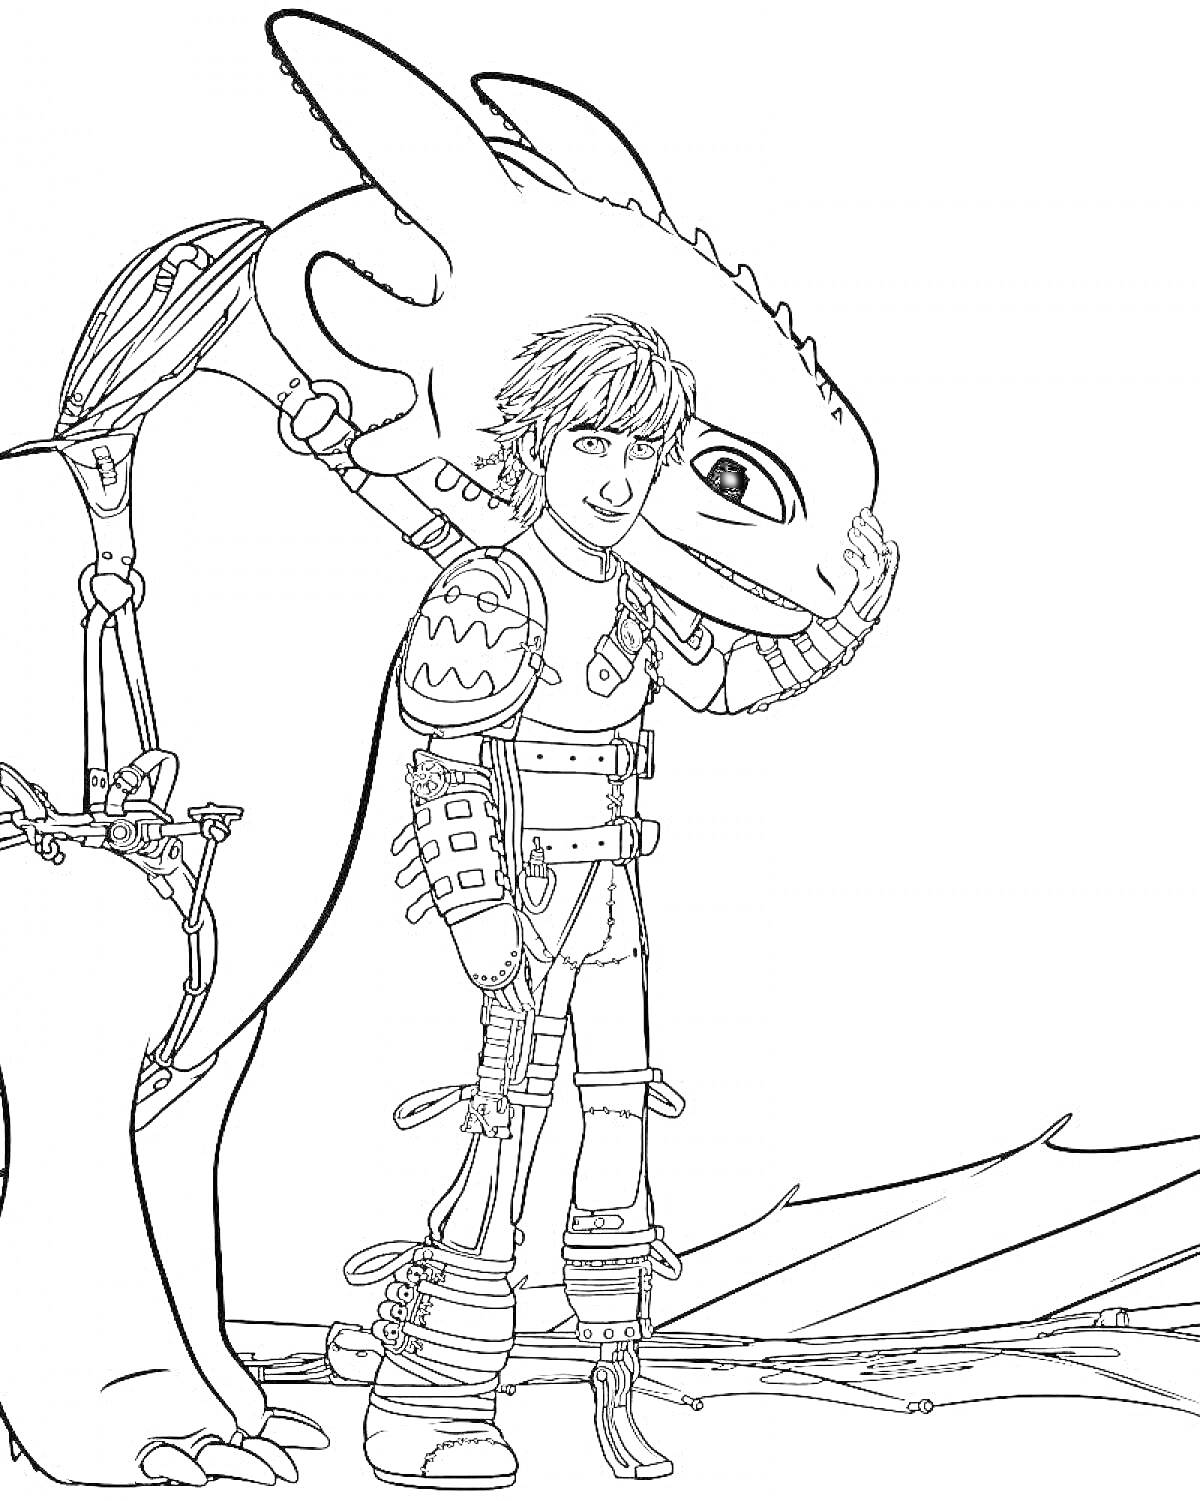 Раскраска Иккинг и Беззубик рядом, Иккинг обнимает голову дракона, примирение человека и дракона.